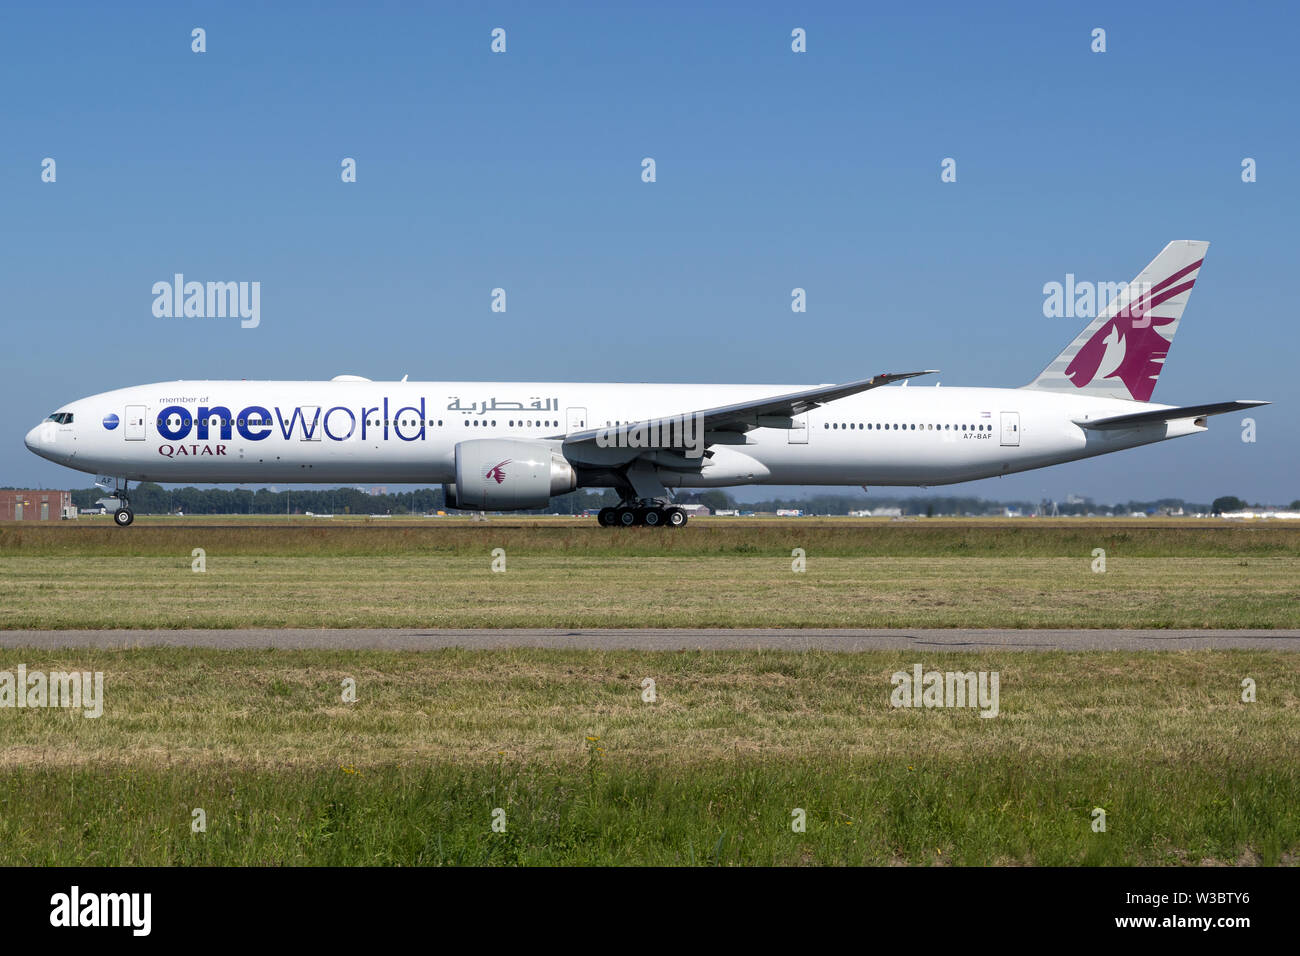 Qatar Airways Boeing 777-300 con la registrazione A7-baf nella speciale livrea oneworld in decollo rotolare sulla pista 36L dell'aeroporto di Amsterdam Schiphol. Foto Stock